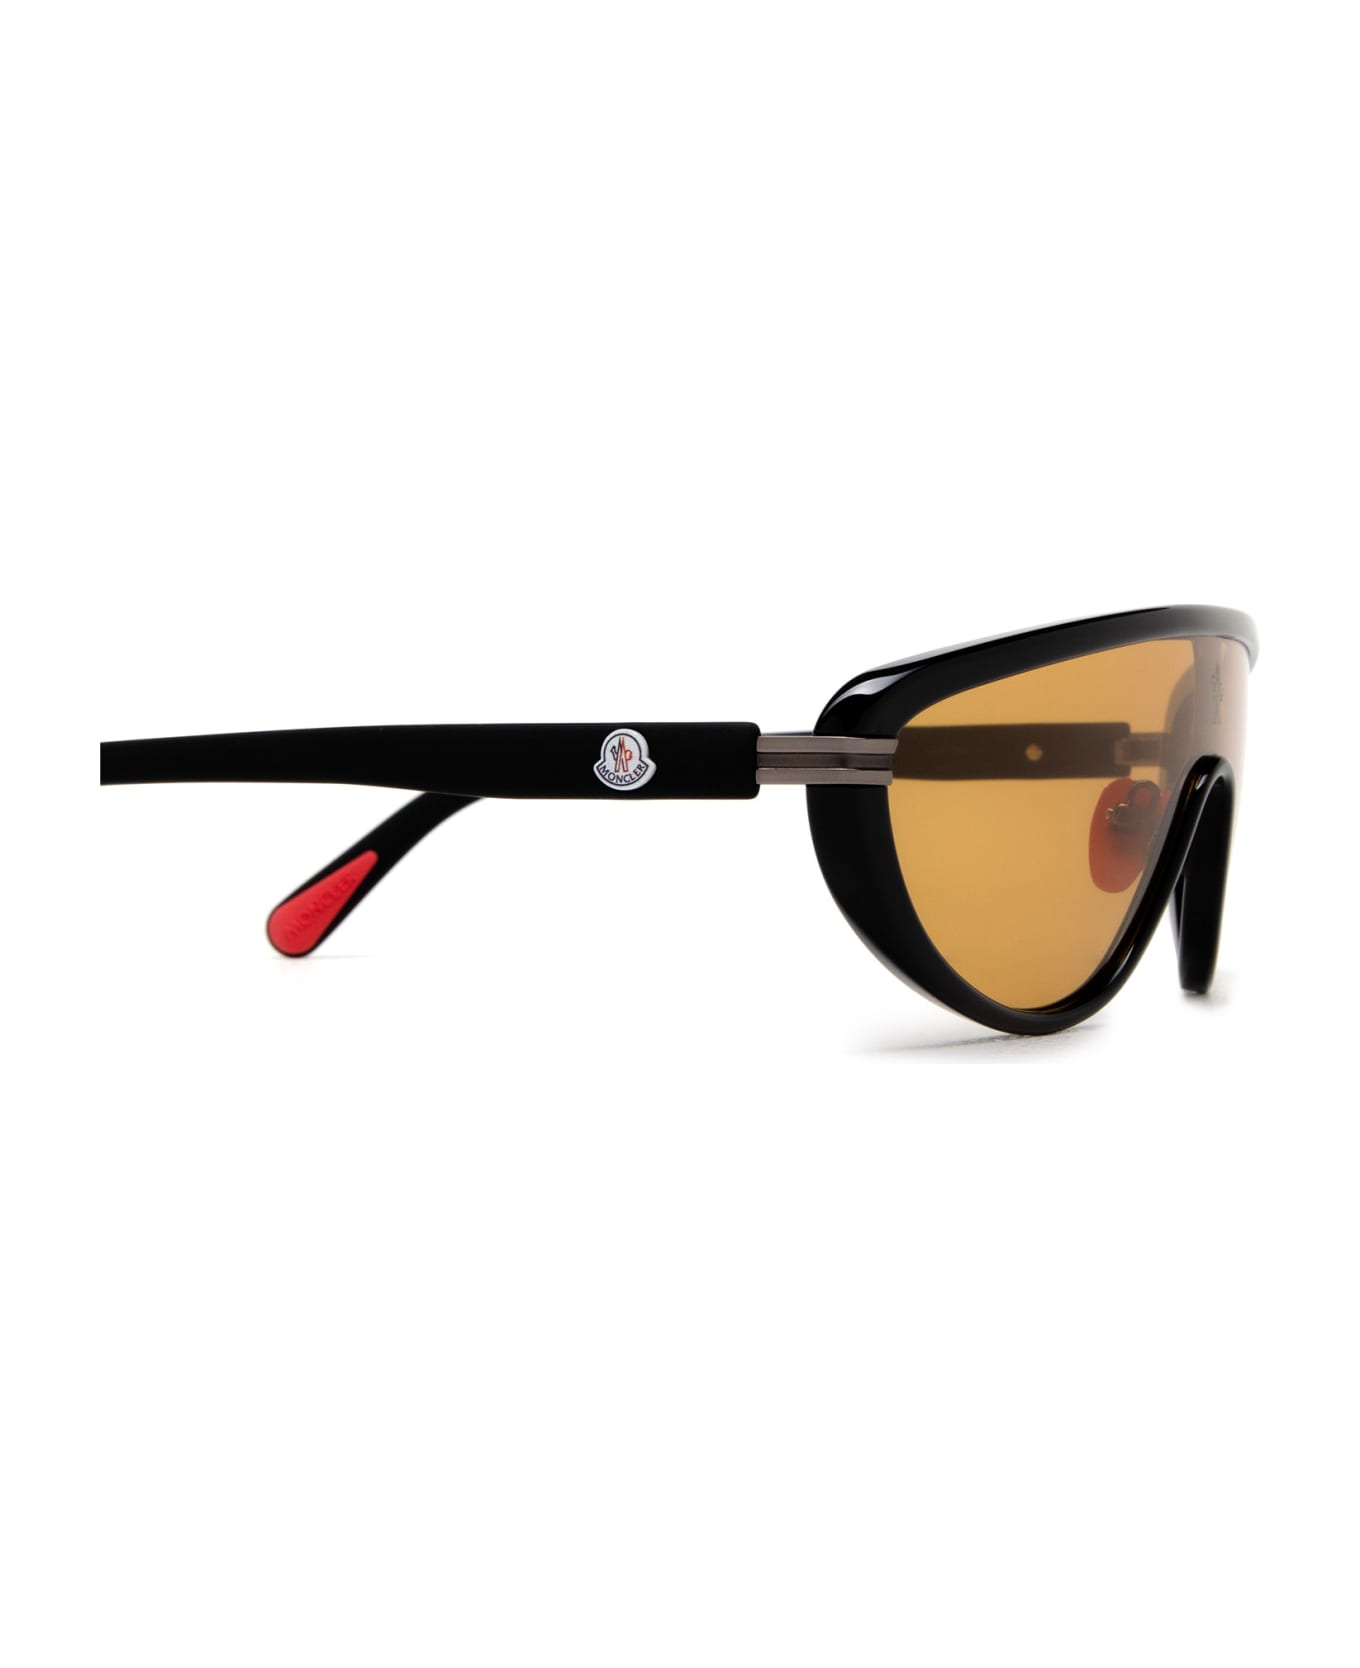 Moncler Eyewear Ml0239 Shiny Black Sunglasses - Shiny Black サングラス